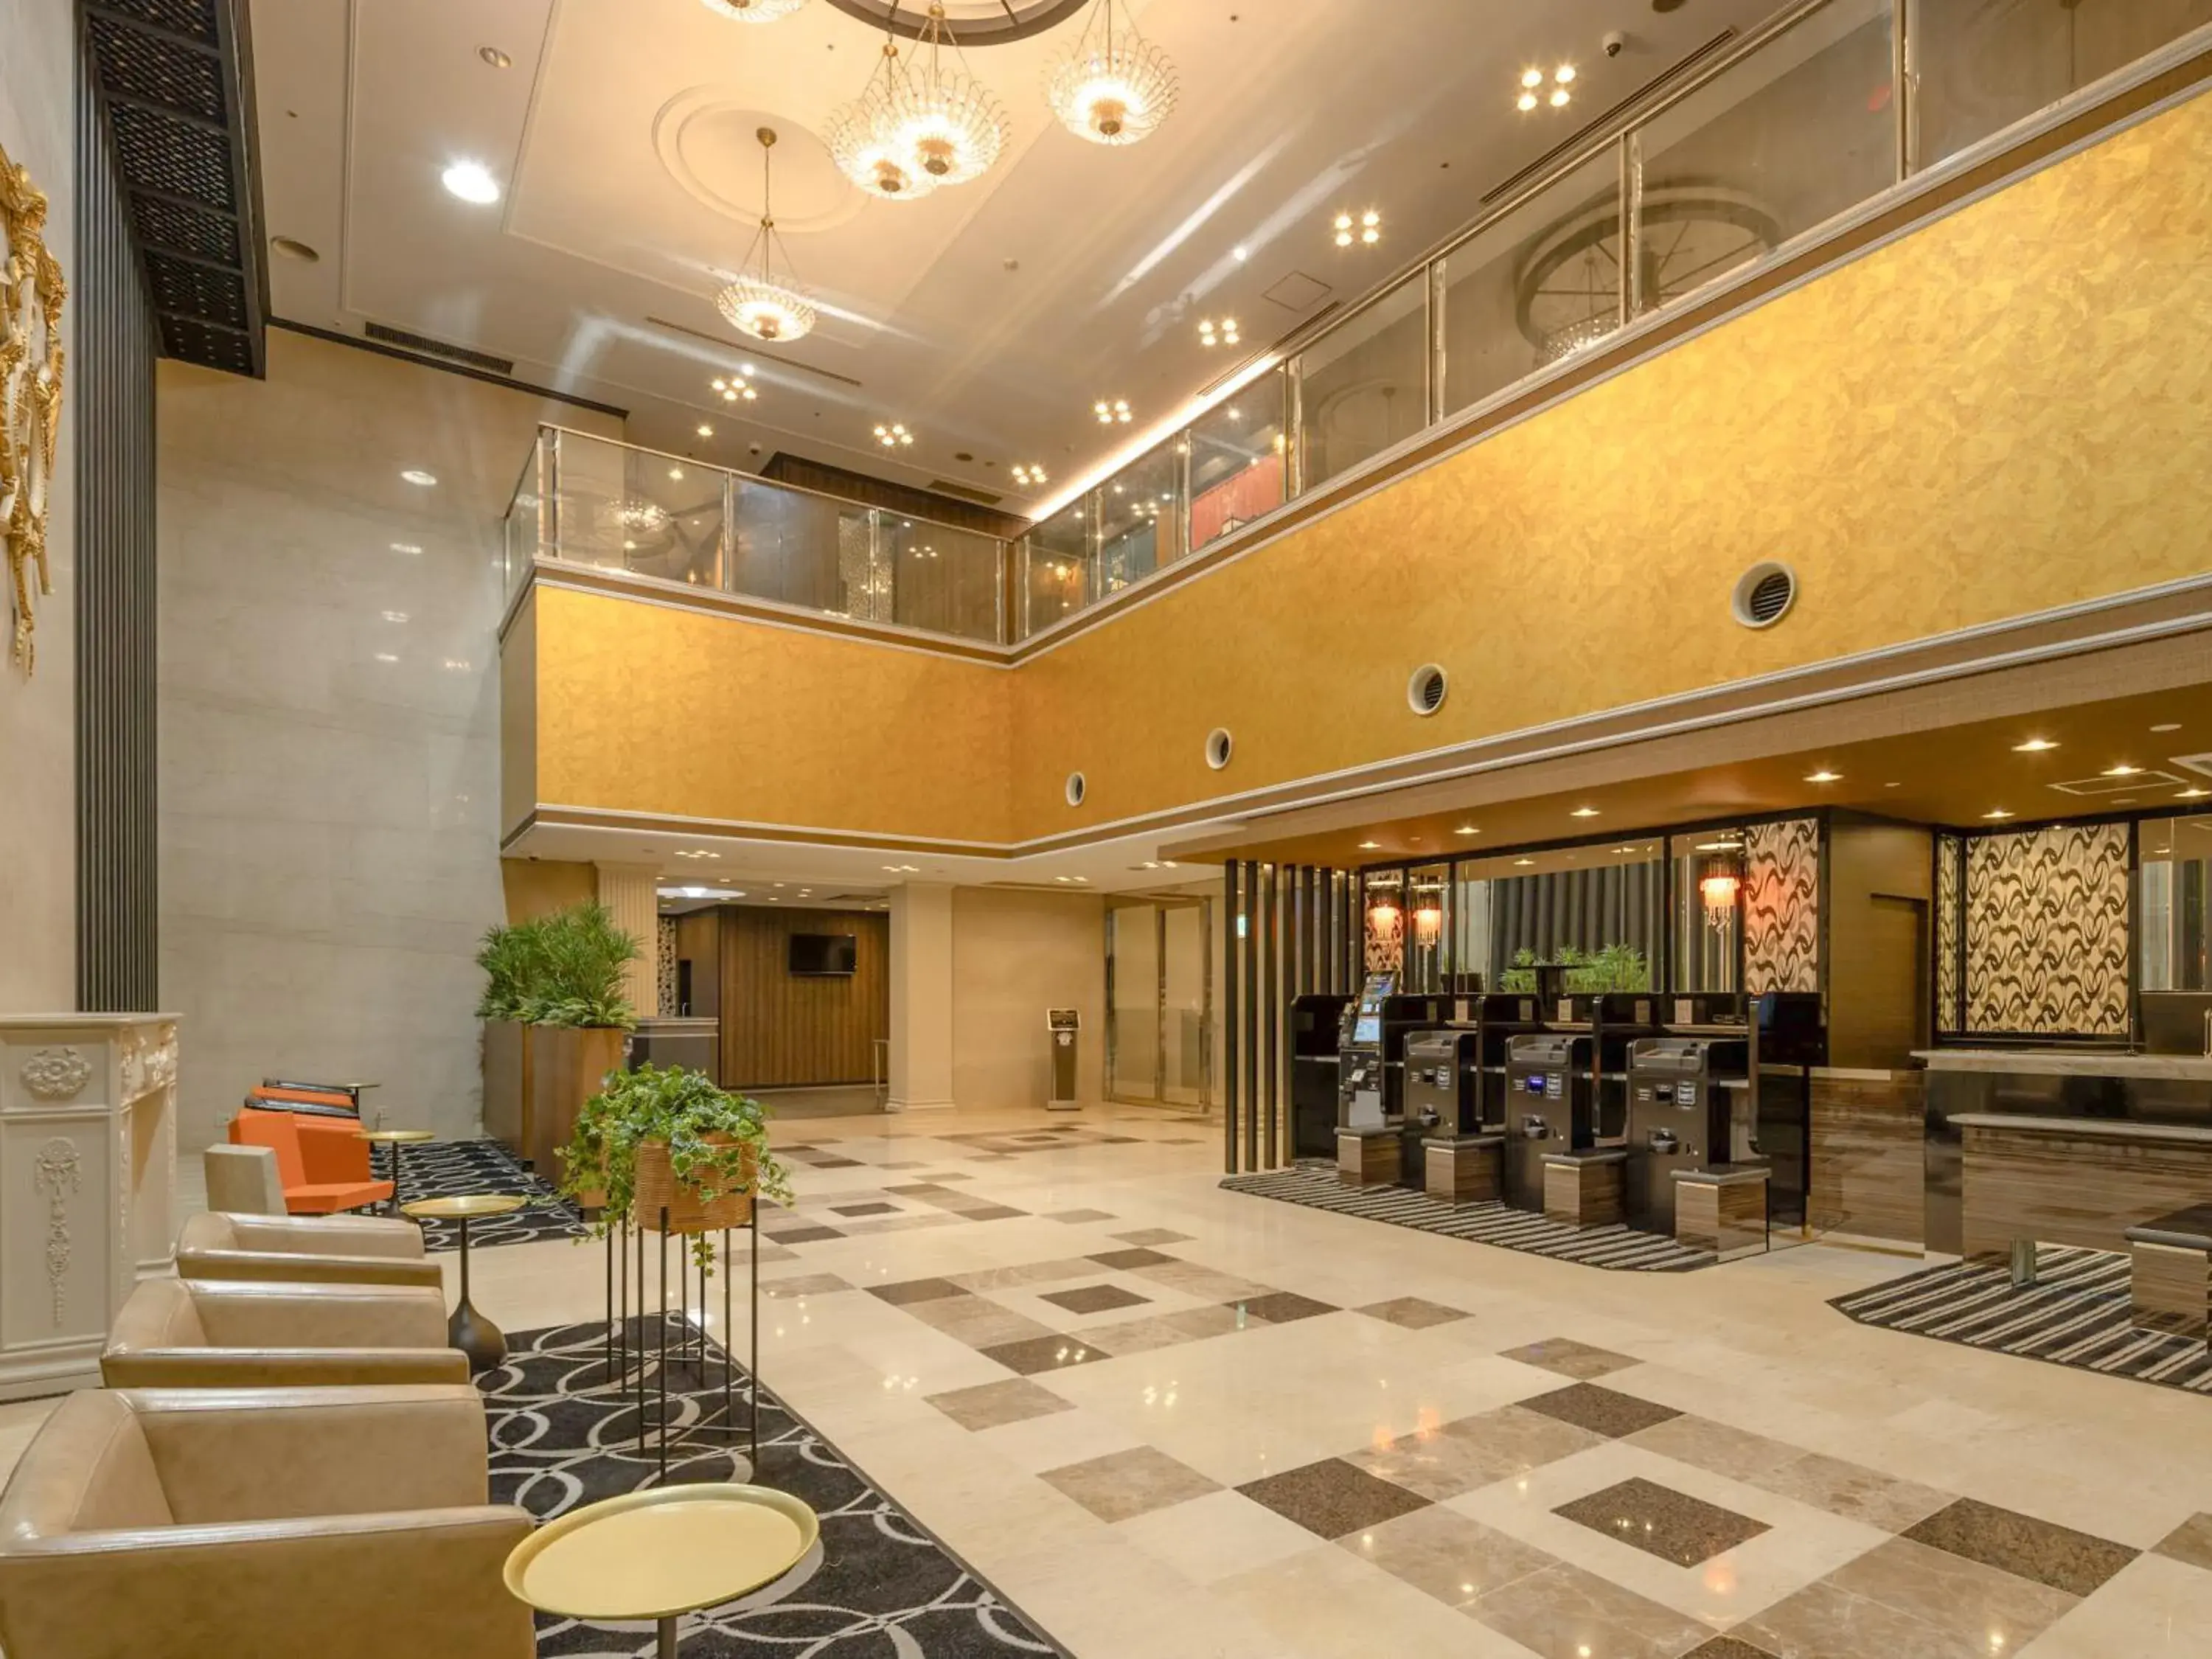 Lobby or reception, Lobby/Reception in Apa Hotel Toyama